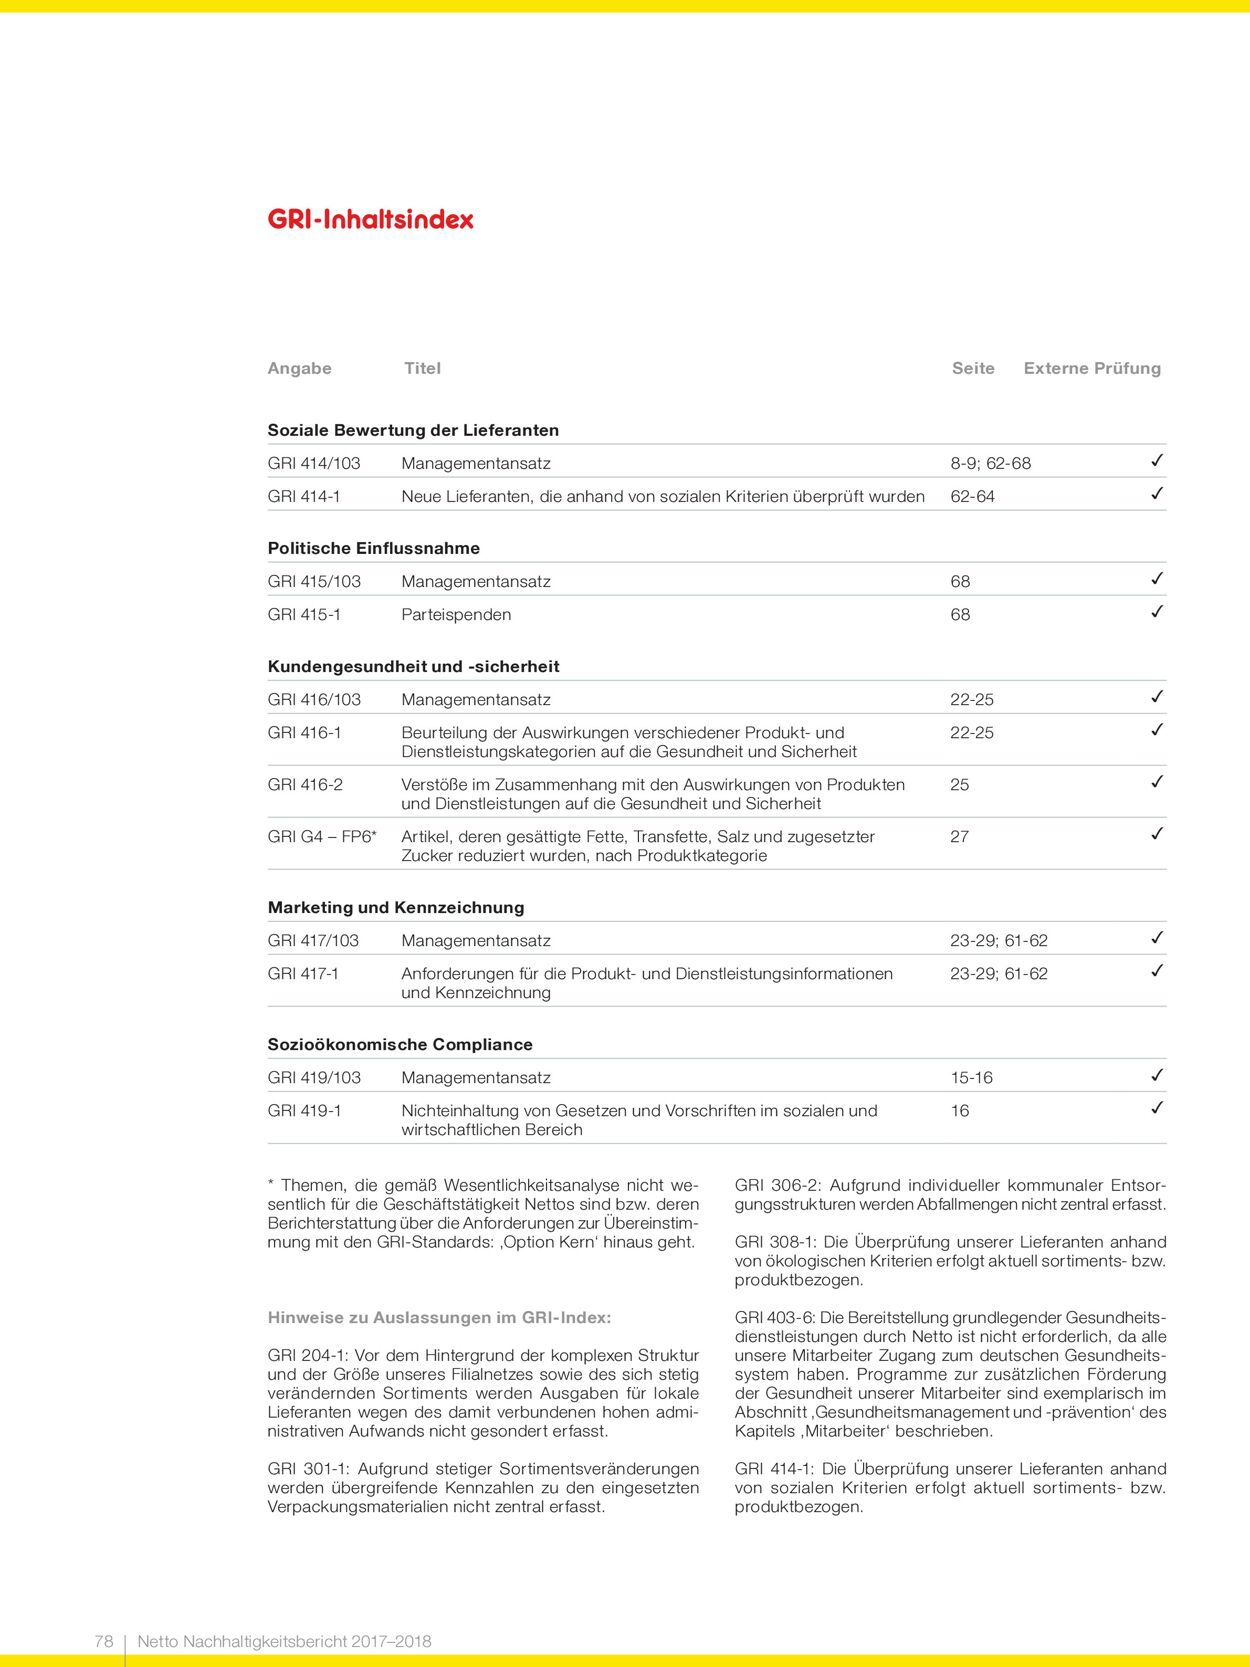 Prospekt Netto Marken-Discount vom 07.11.2022